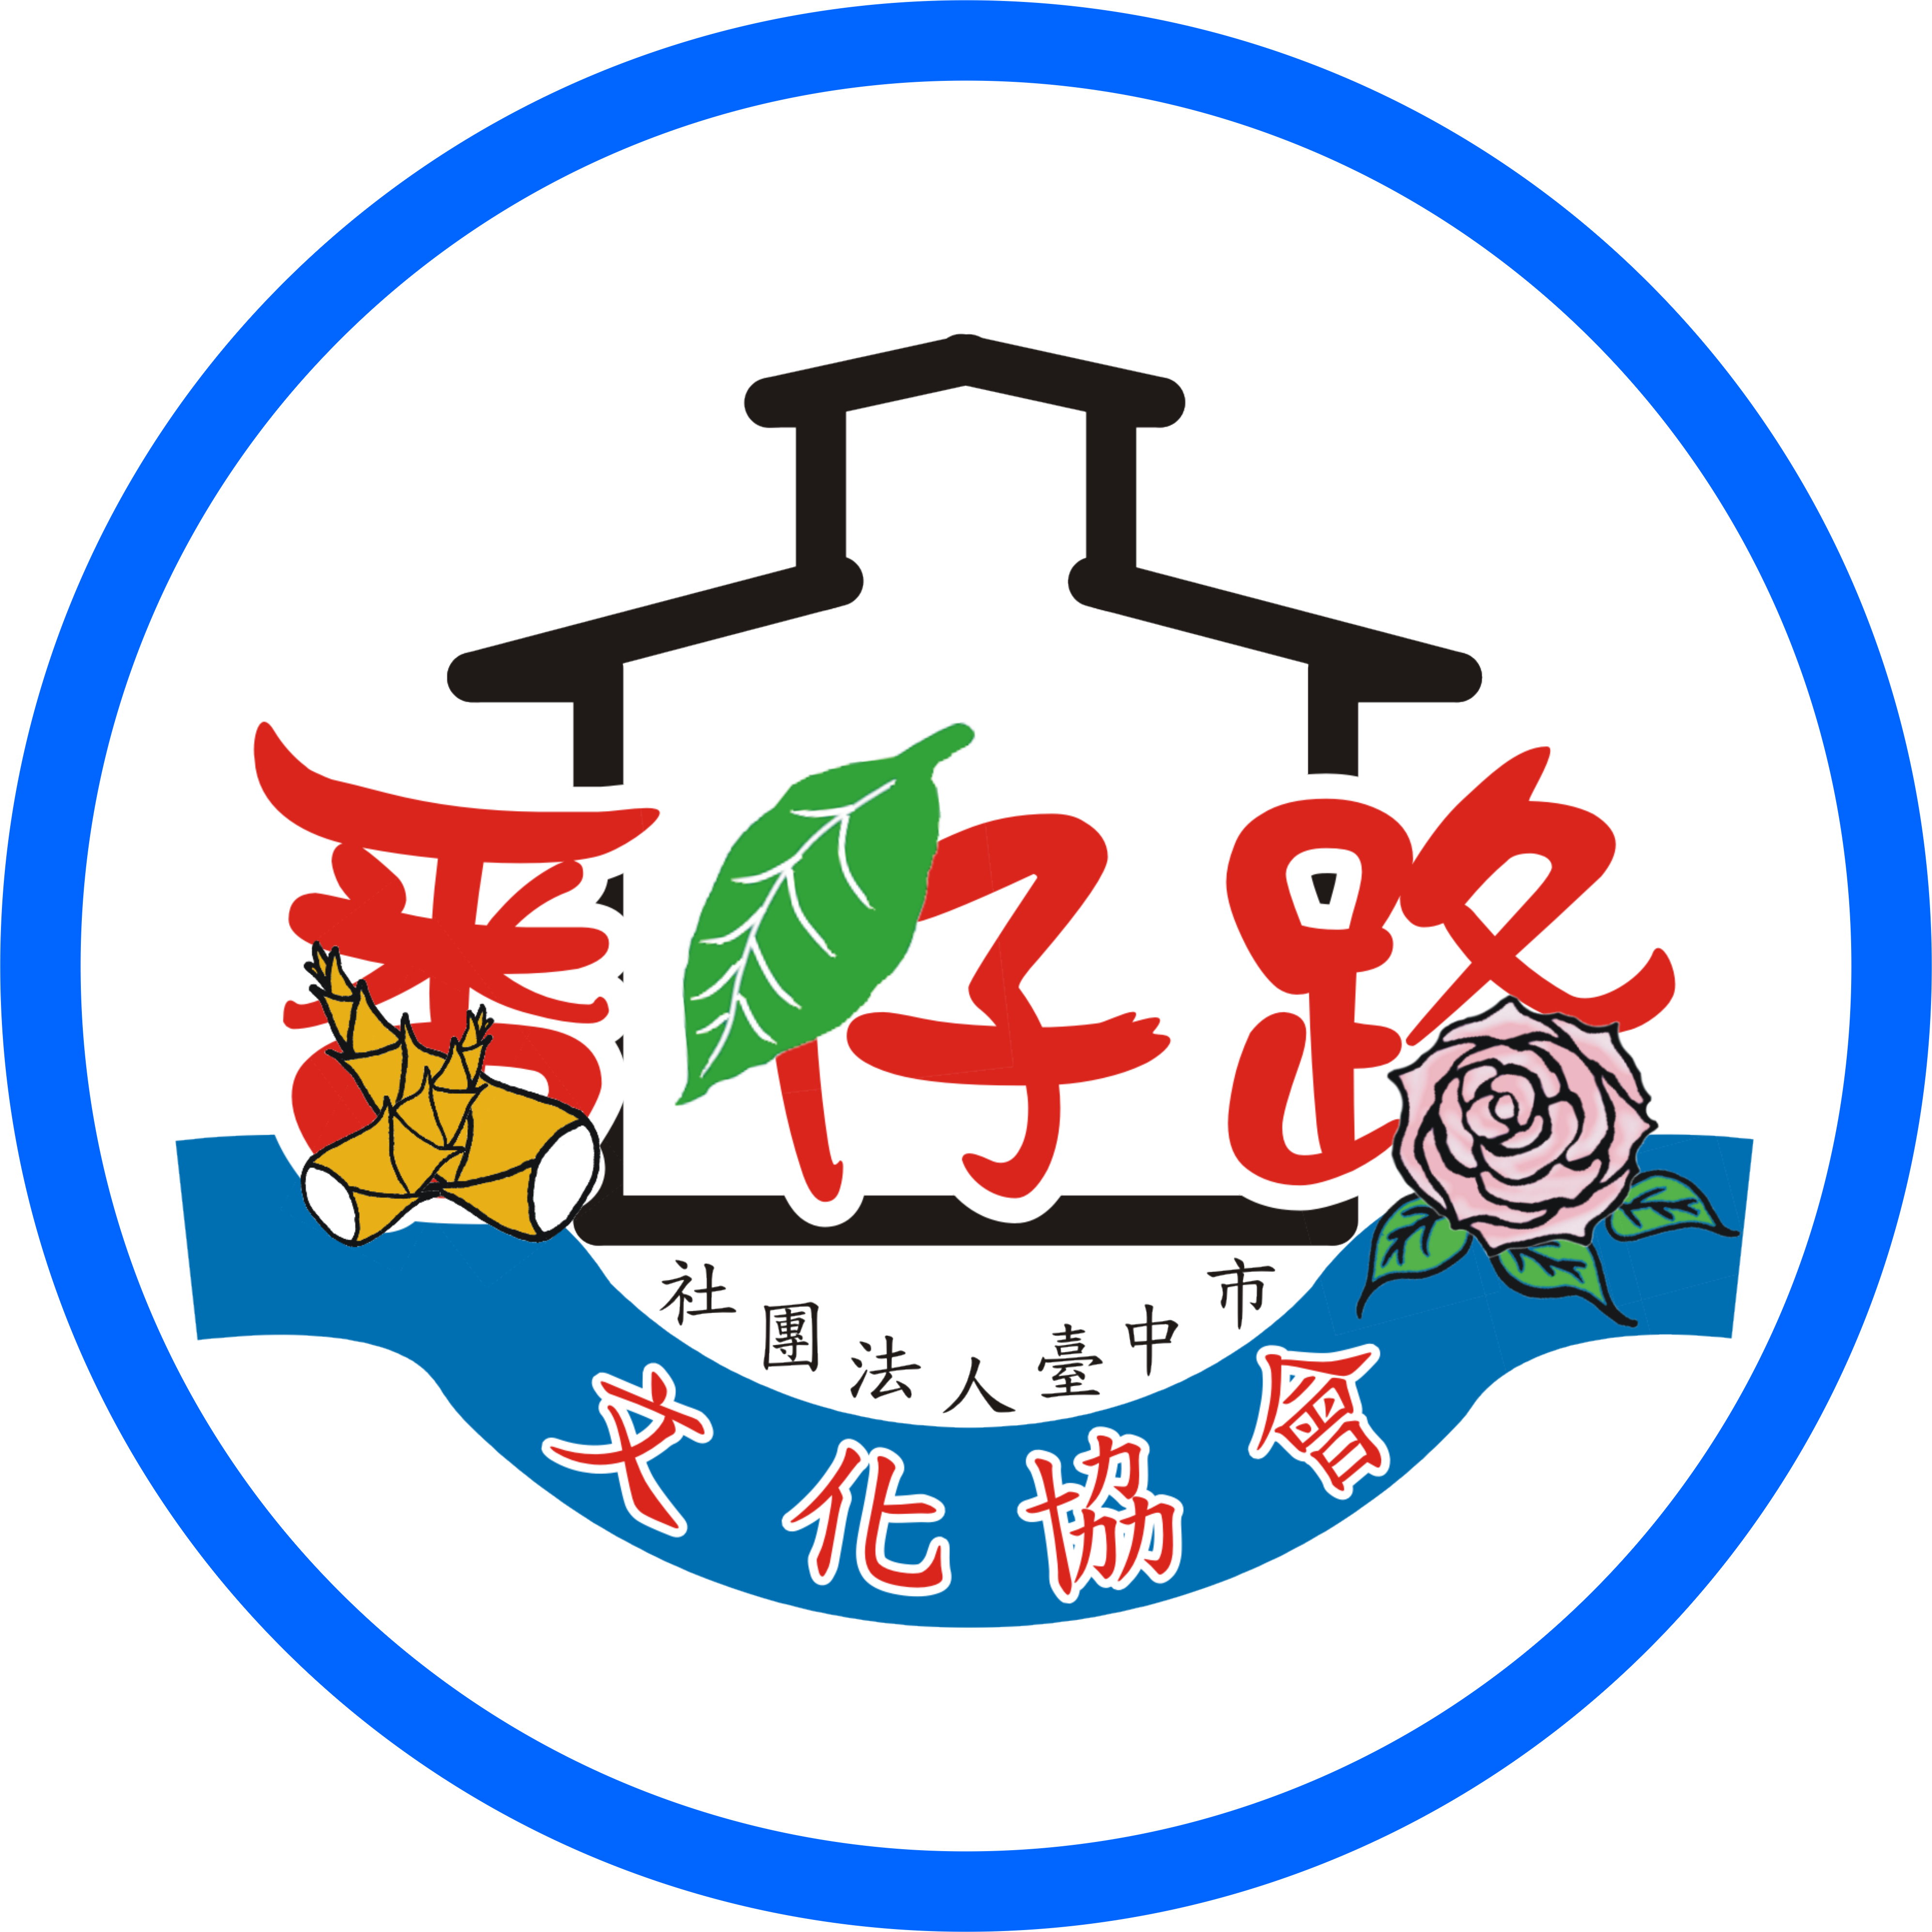 臺中市番仔路文化協會代表圖像